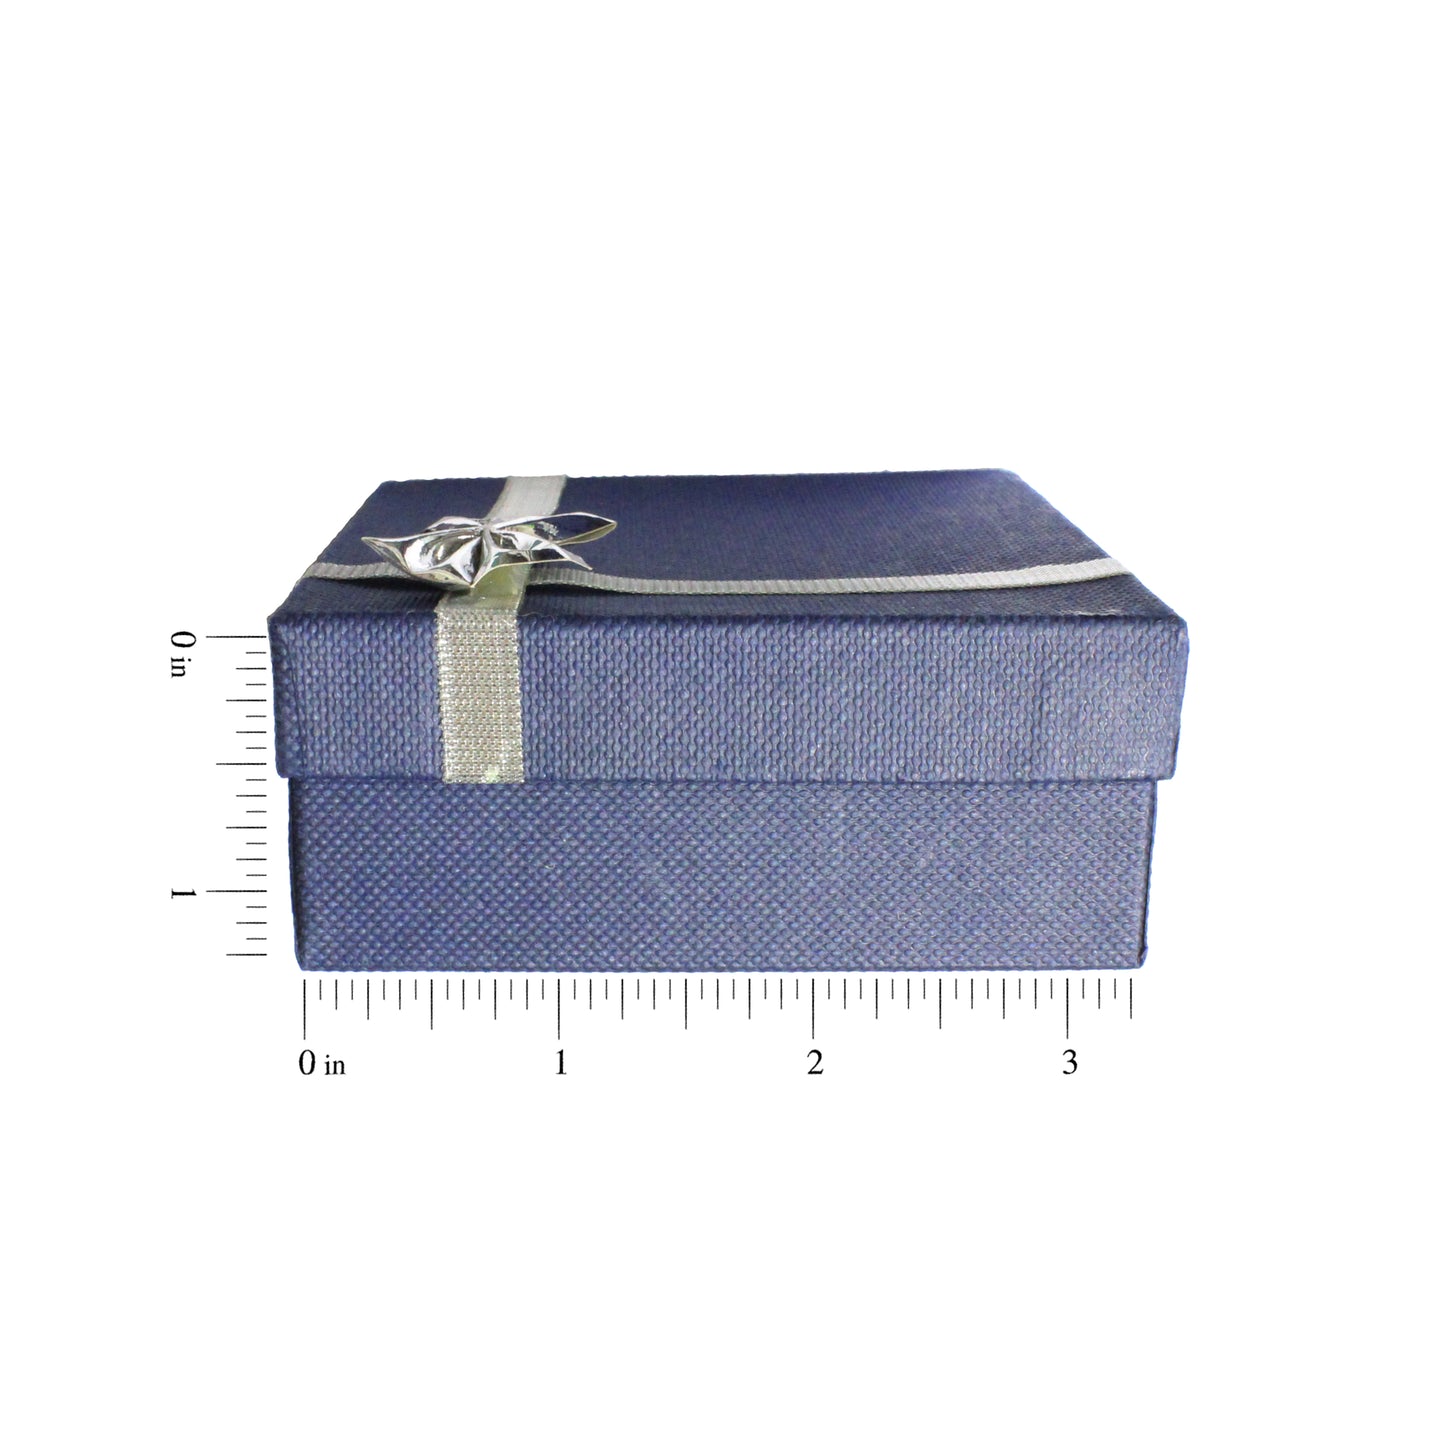 Blue Linen Bracelet Jewelry Box with silver bow tie- 3 1/4 x 3 1/4 x 1 1/4"